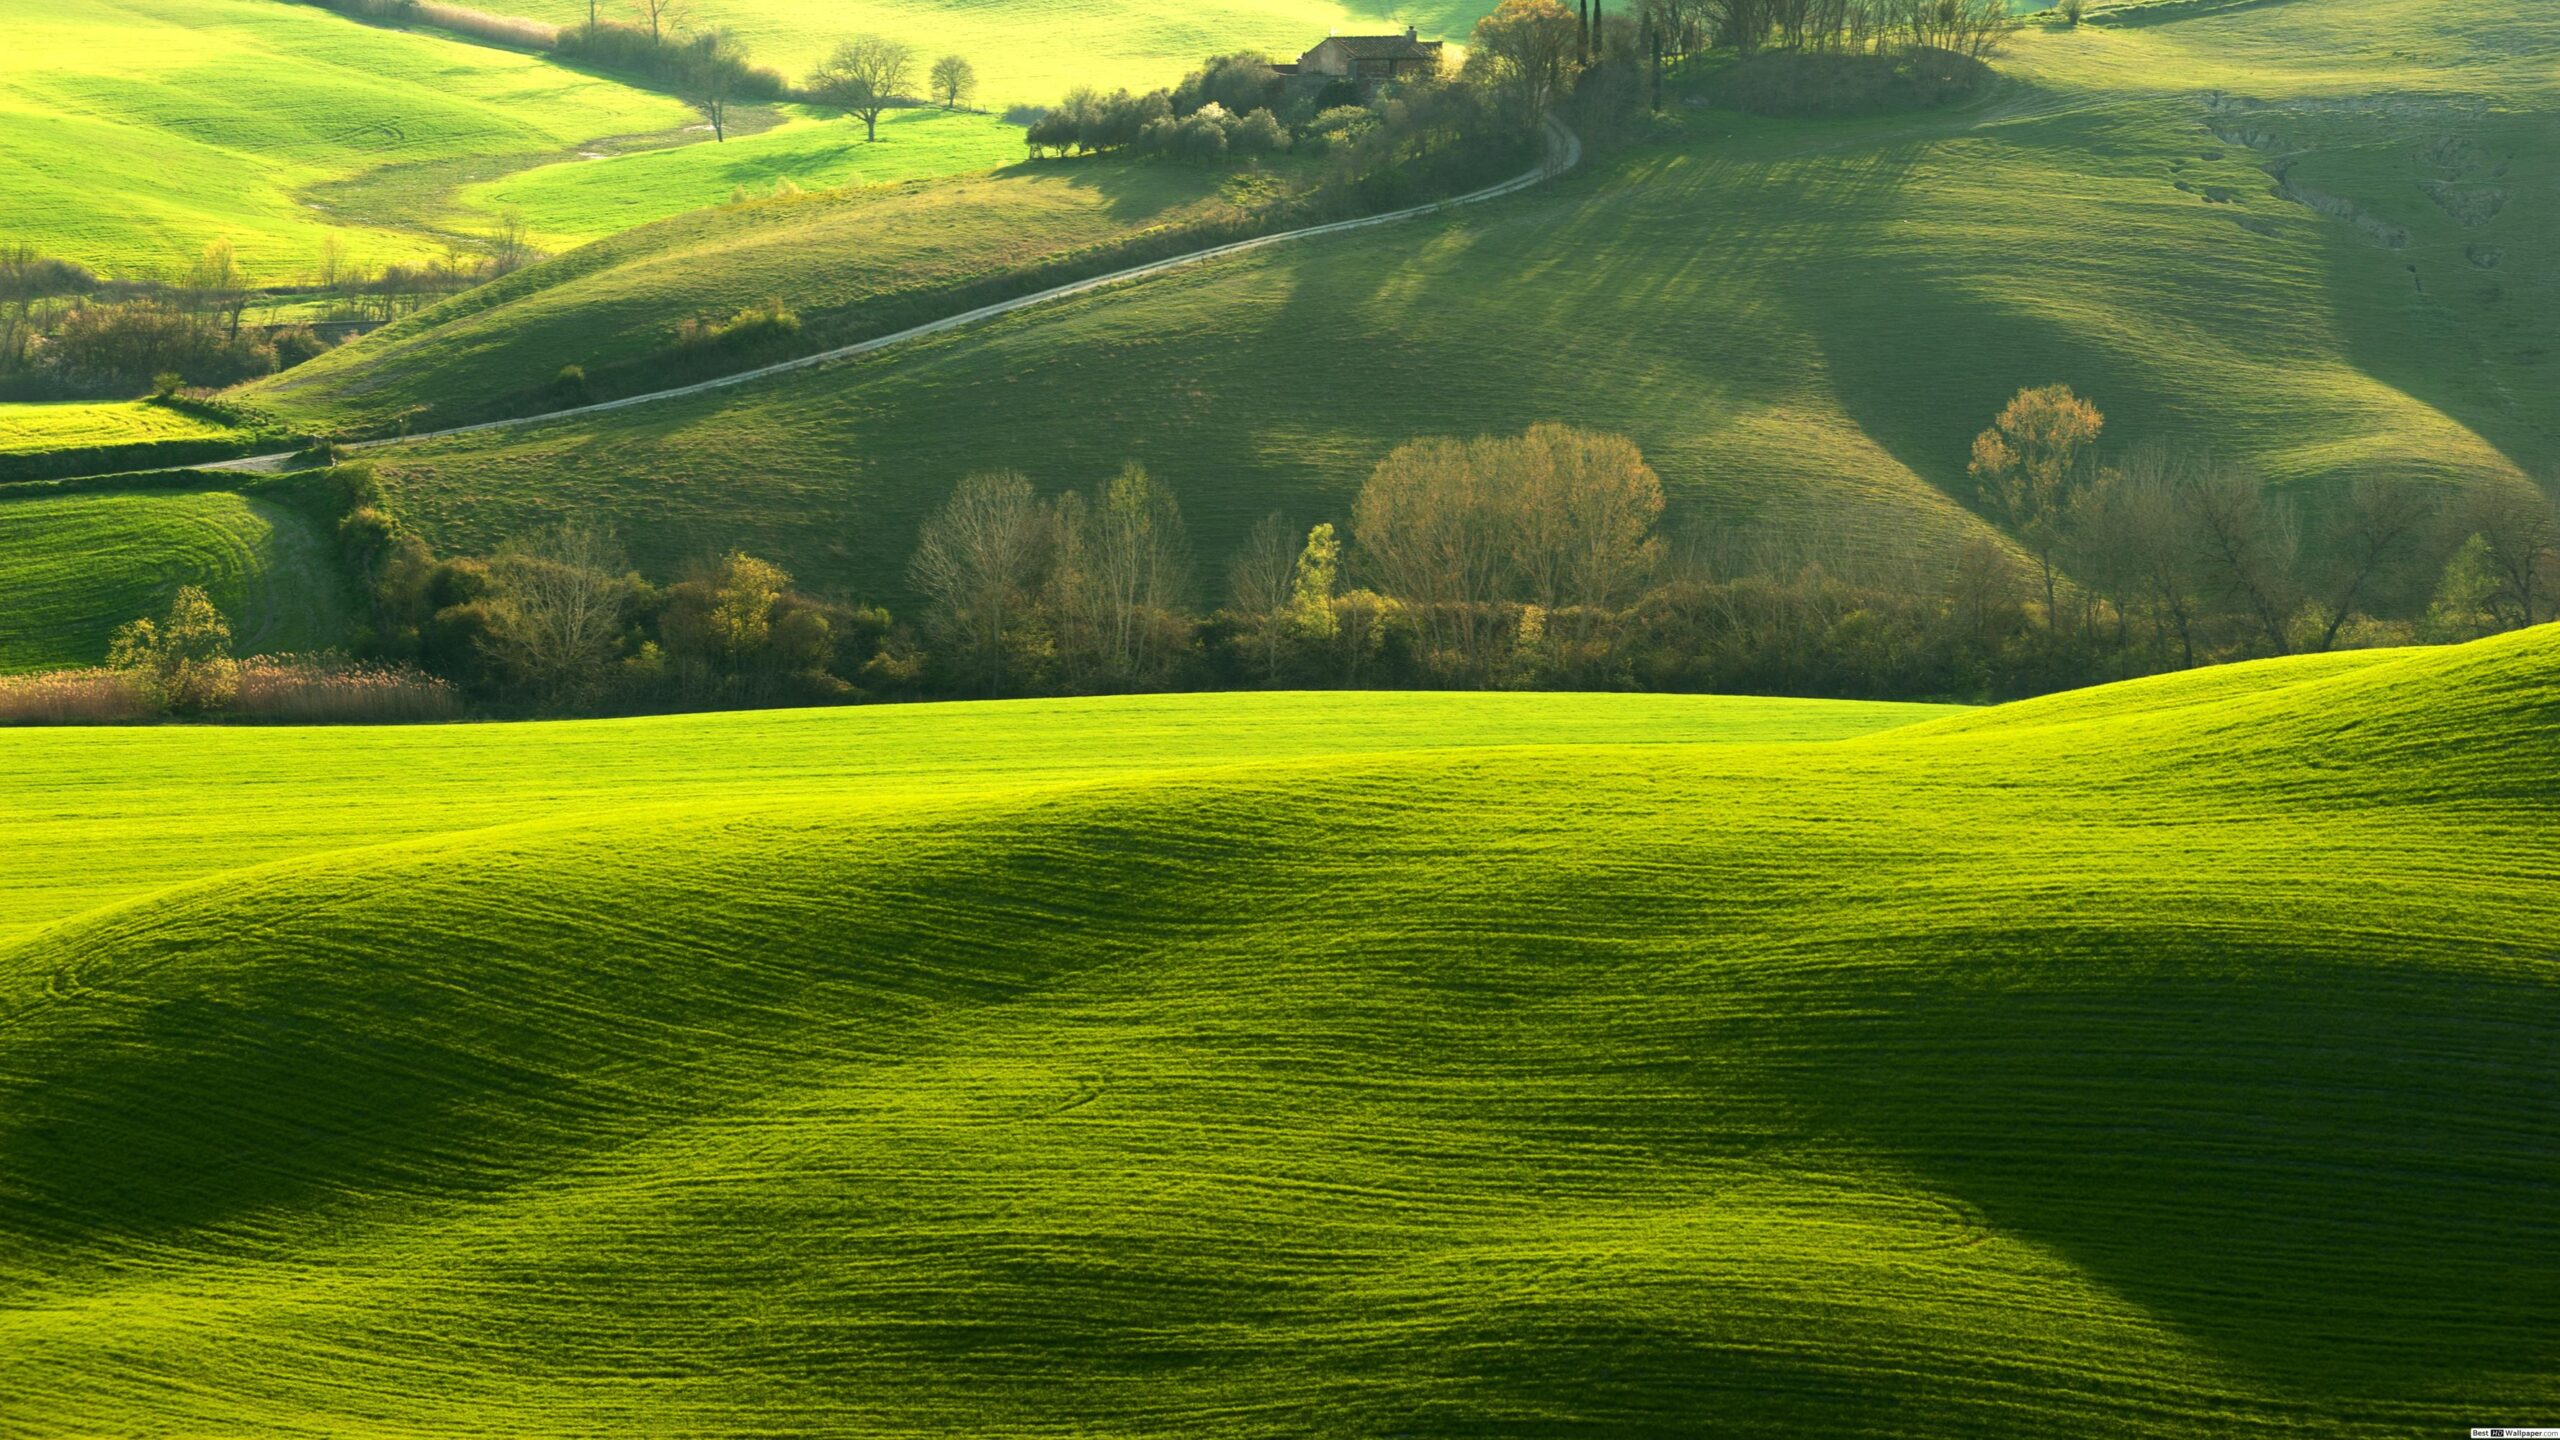 Hình nền cỏ xanh: Thư giãn với hình nền tươi tắn, trong lành của cỏ xanh. Với những bức ảnh này, bạn sẽ có cảm giác như đang đứng giữa một bãi cỏ rộng lớn, hít thở không khí trong lành và cảm nhận sự yên bình. Xem ngay để tận hưởng không khí mát mẻ này!